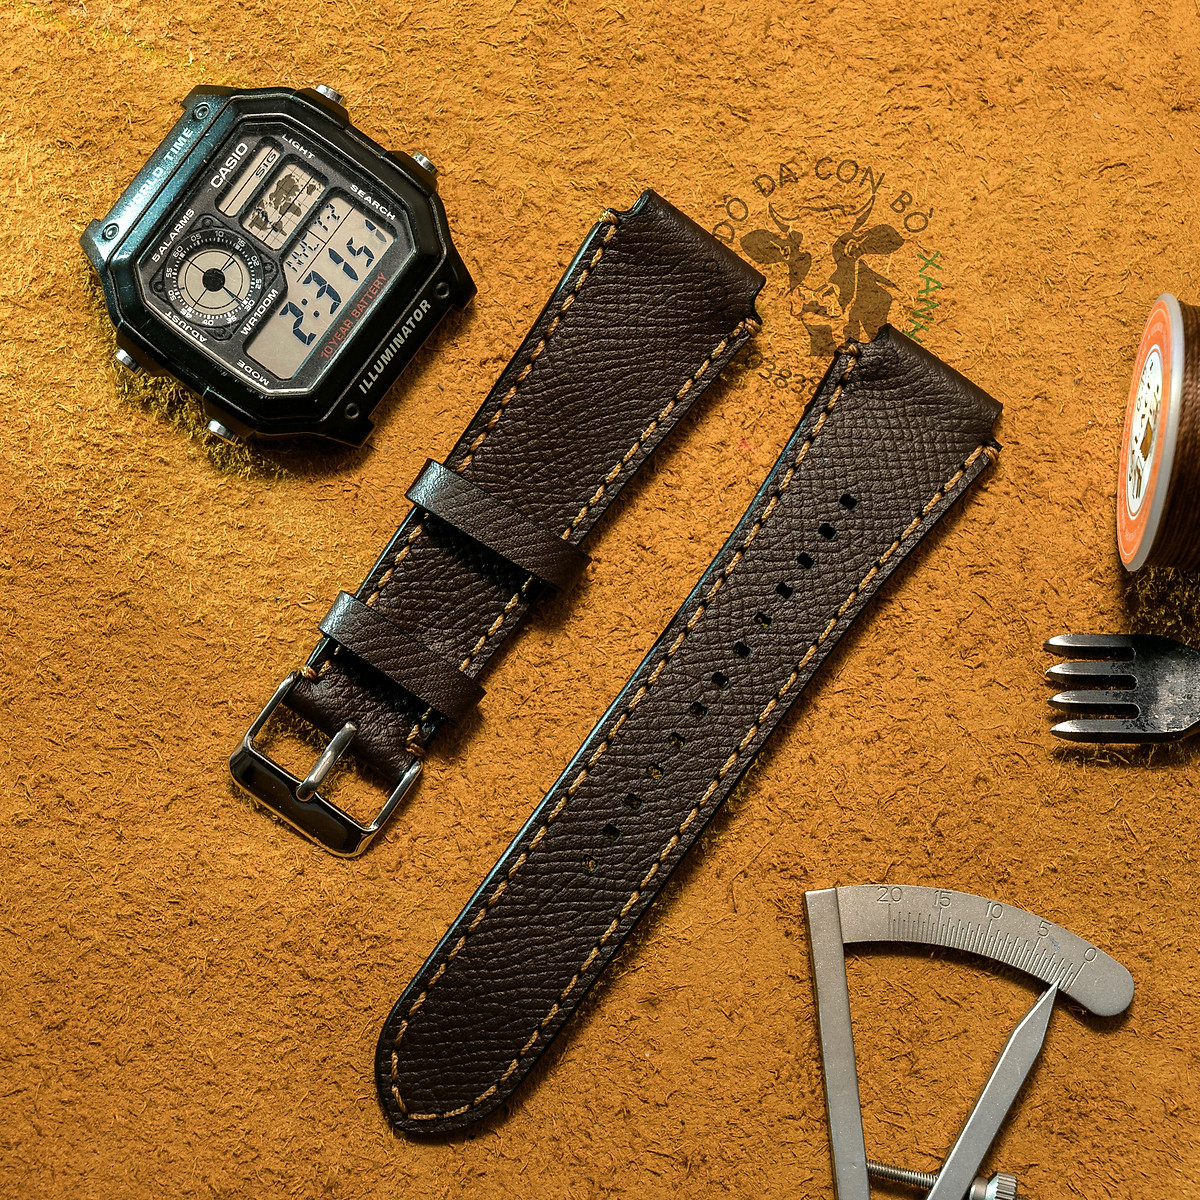 Mua Dây da đồng hồ dành cho Casio Ae1200 - seiko size 18mm Handmade (Tặng  kèm khoá + cây thay dây ) - Nâu chocolate tại shop gia dụng thanh bình